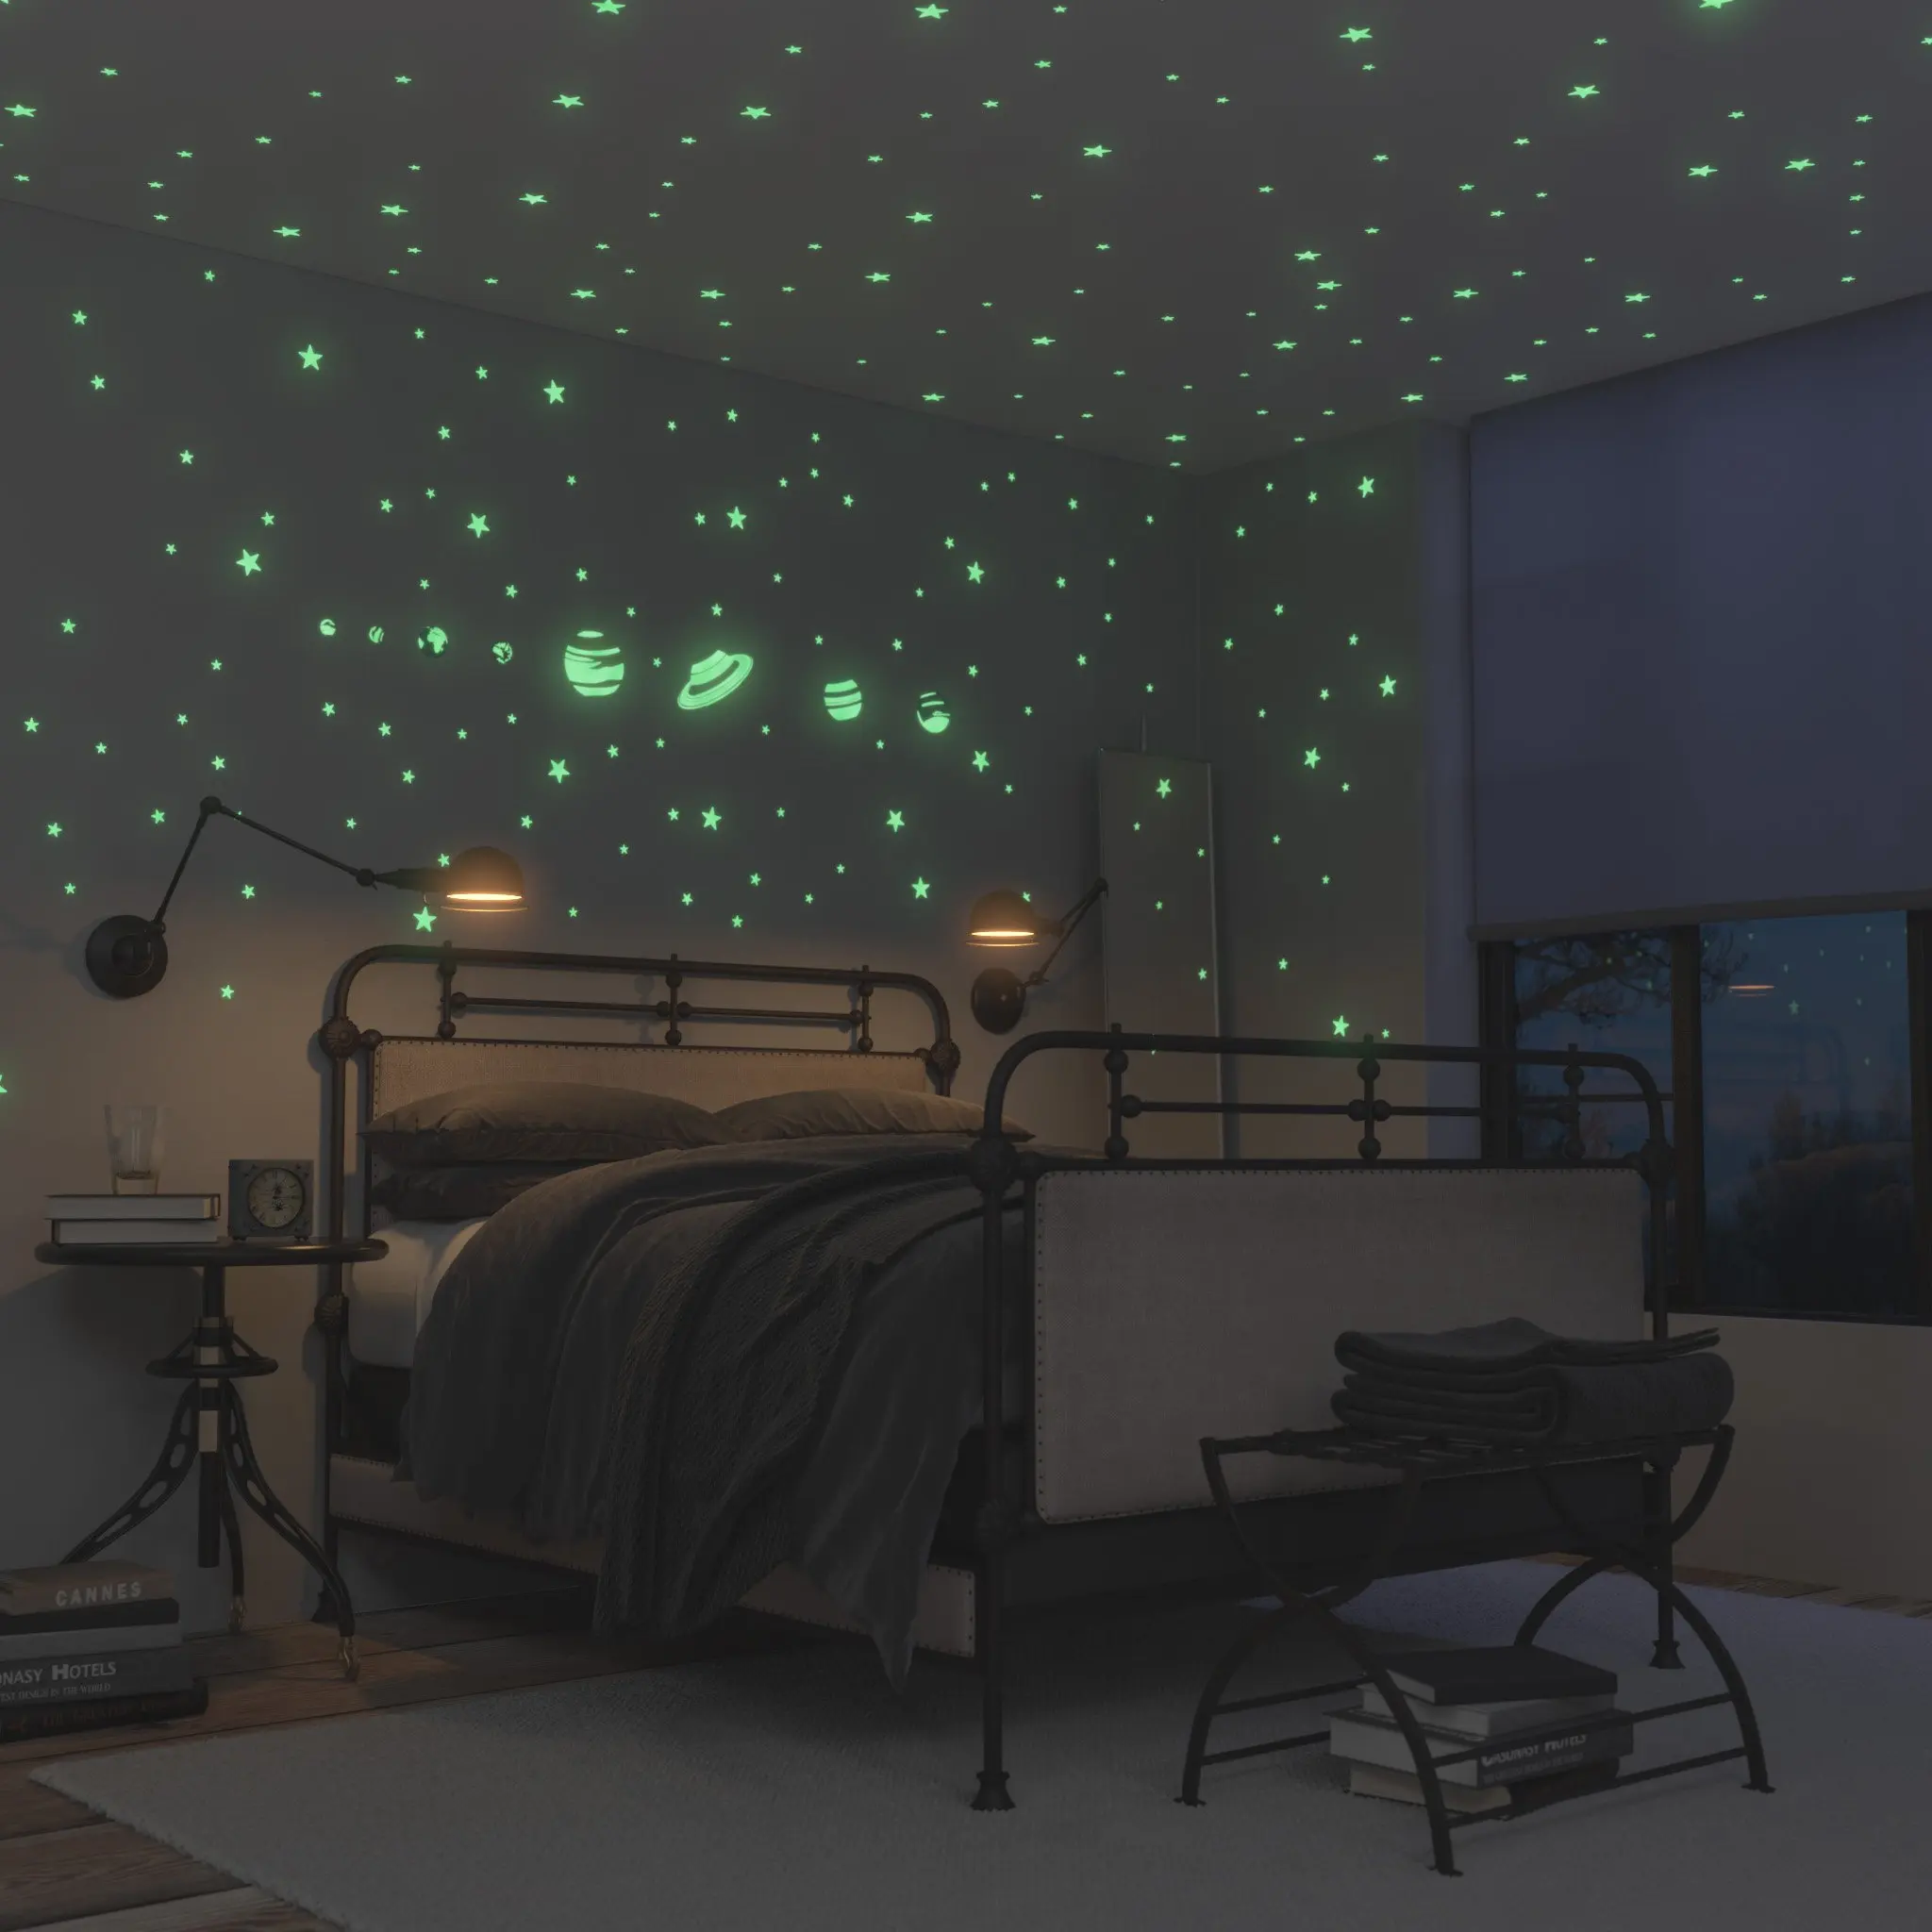 Светила звездного неба. Комната в космическом стиле. Спальня в стиле космос. Звездное небо в комнате. Звёздное небо в комнате на потолке.